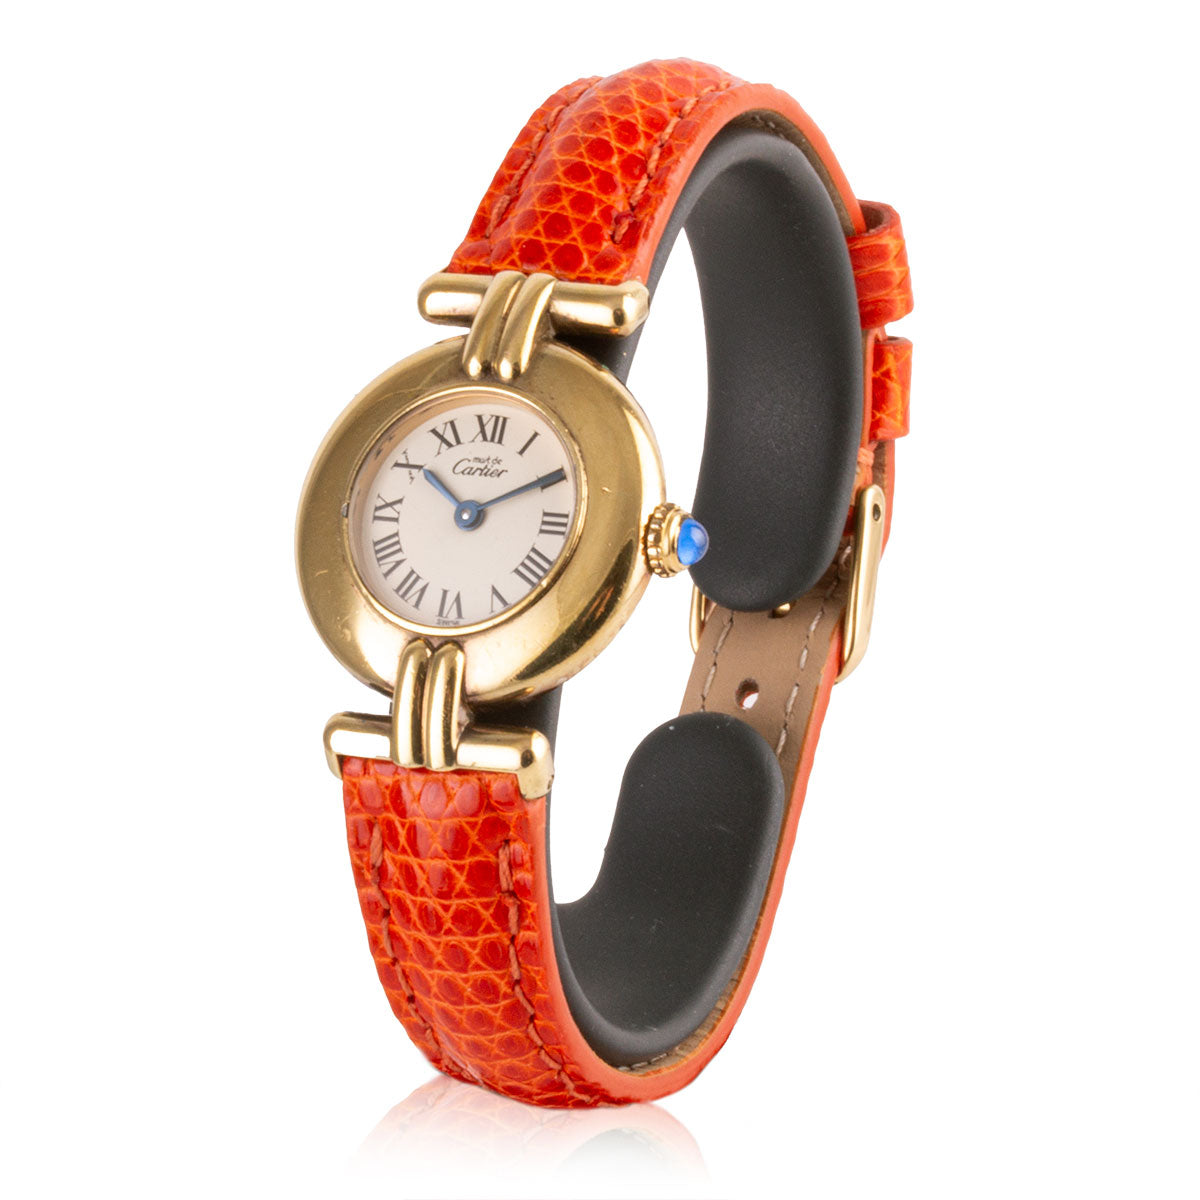 Second-hand watch - Cartier - Must - 1600€